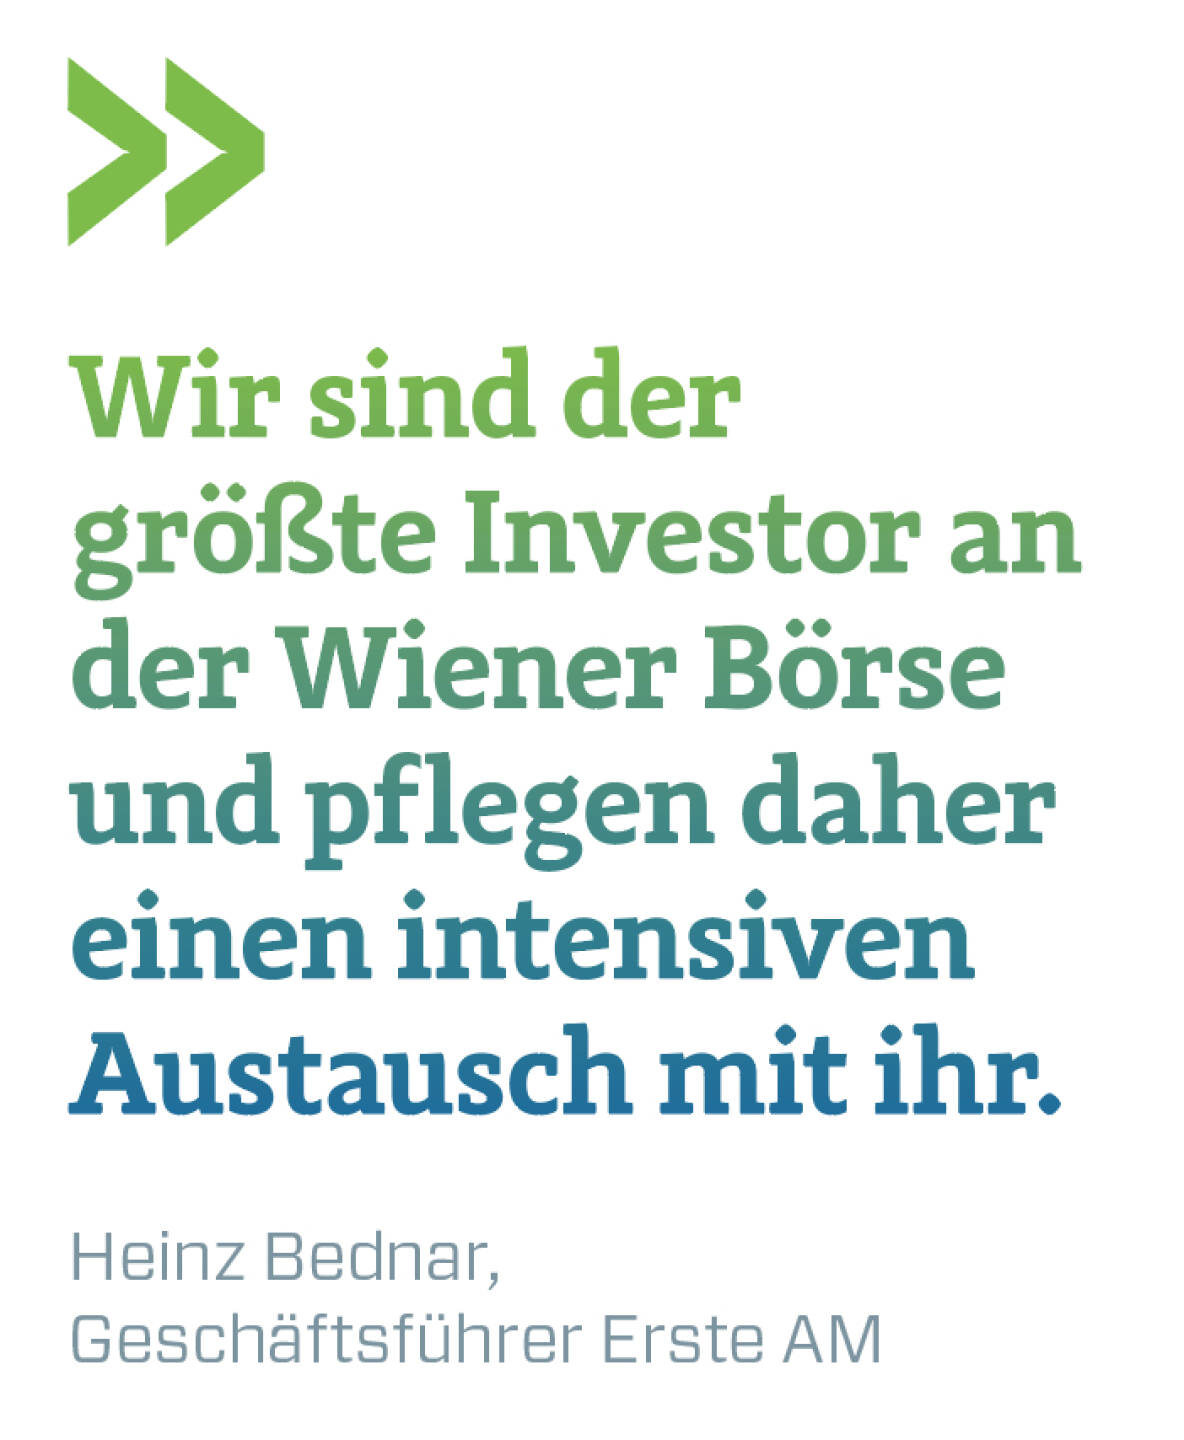 Wir sind der größte Investor an der Wiener Börse und pflegen daher einen intensiven Austausch mit ihr.
Heinz Bednar, Geschäftsführer Erste AM 